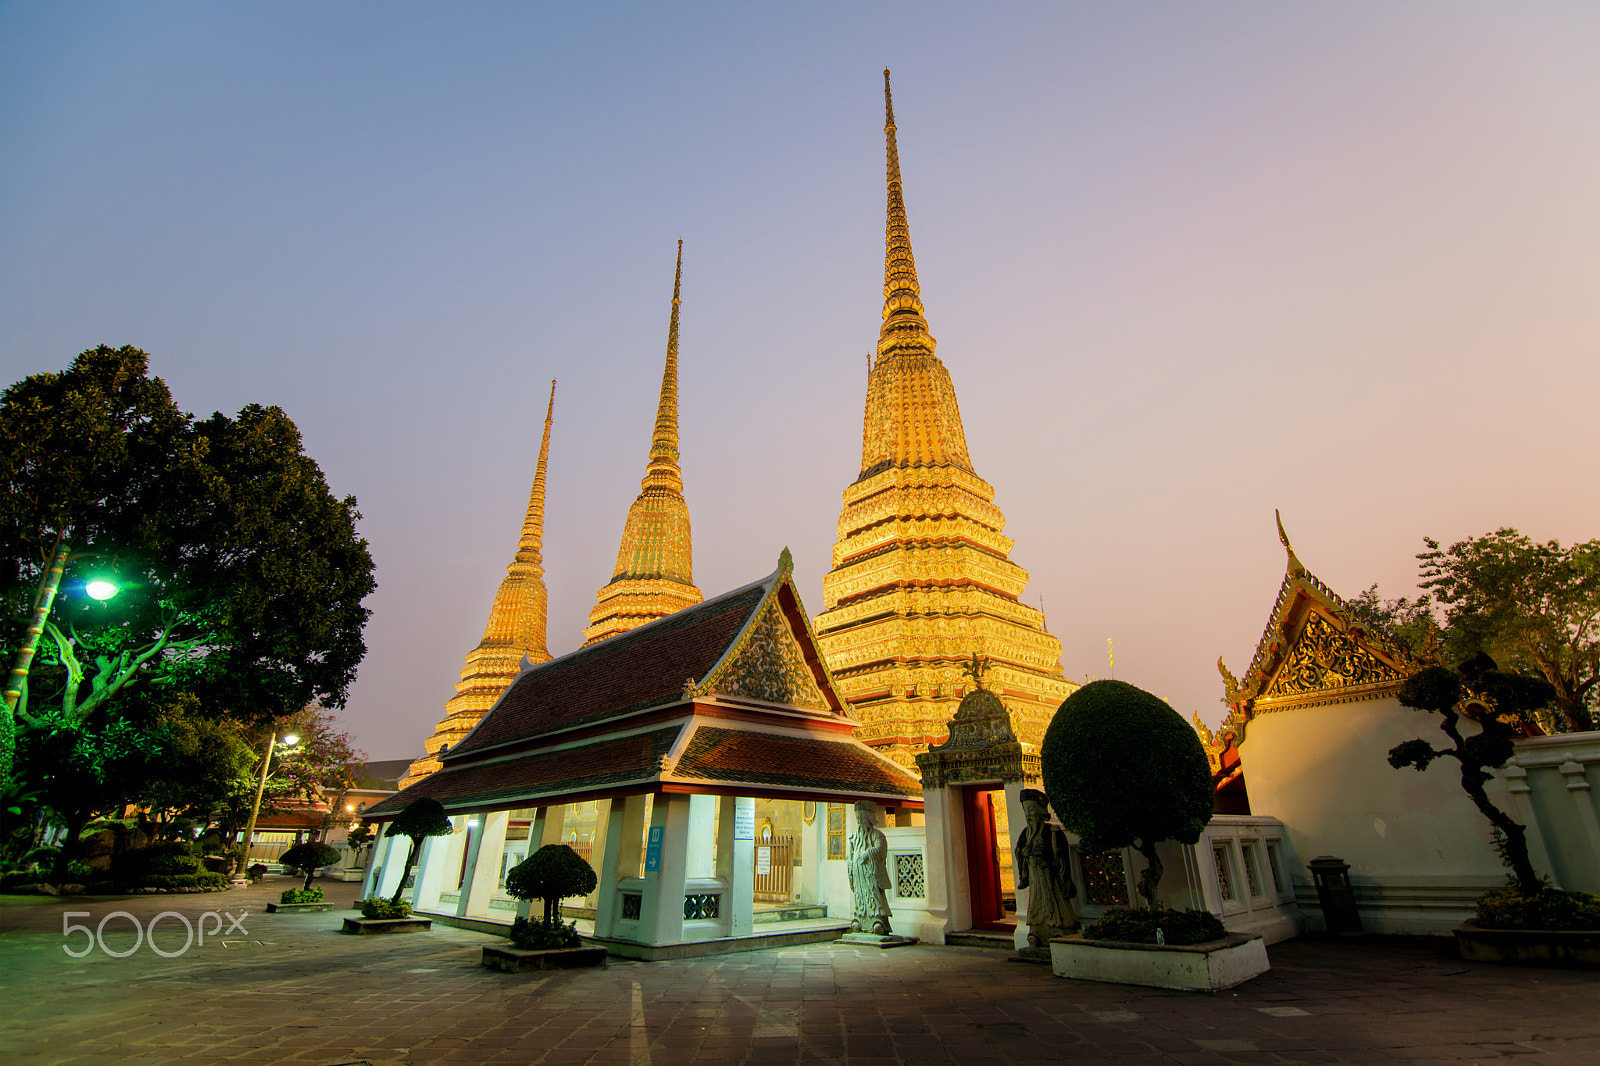 Nikon D800 sample photo. Big pagoda in wat pho temple at night in bangkok, thailand photography